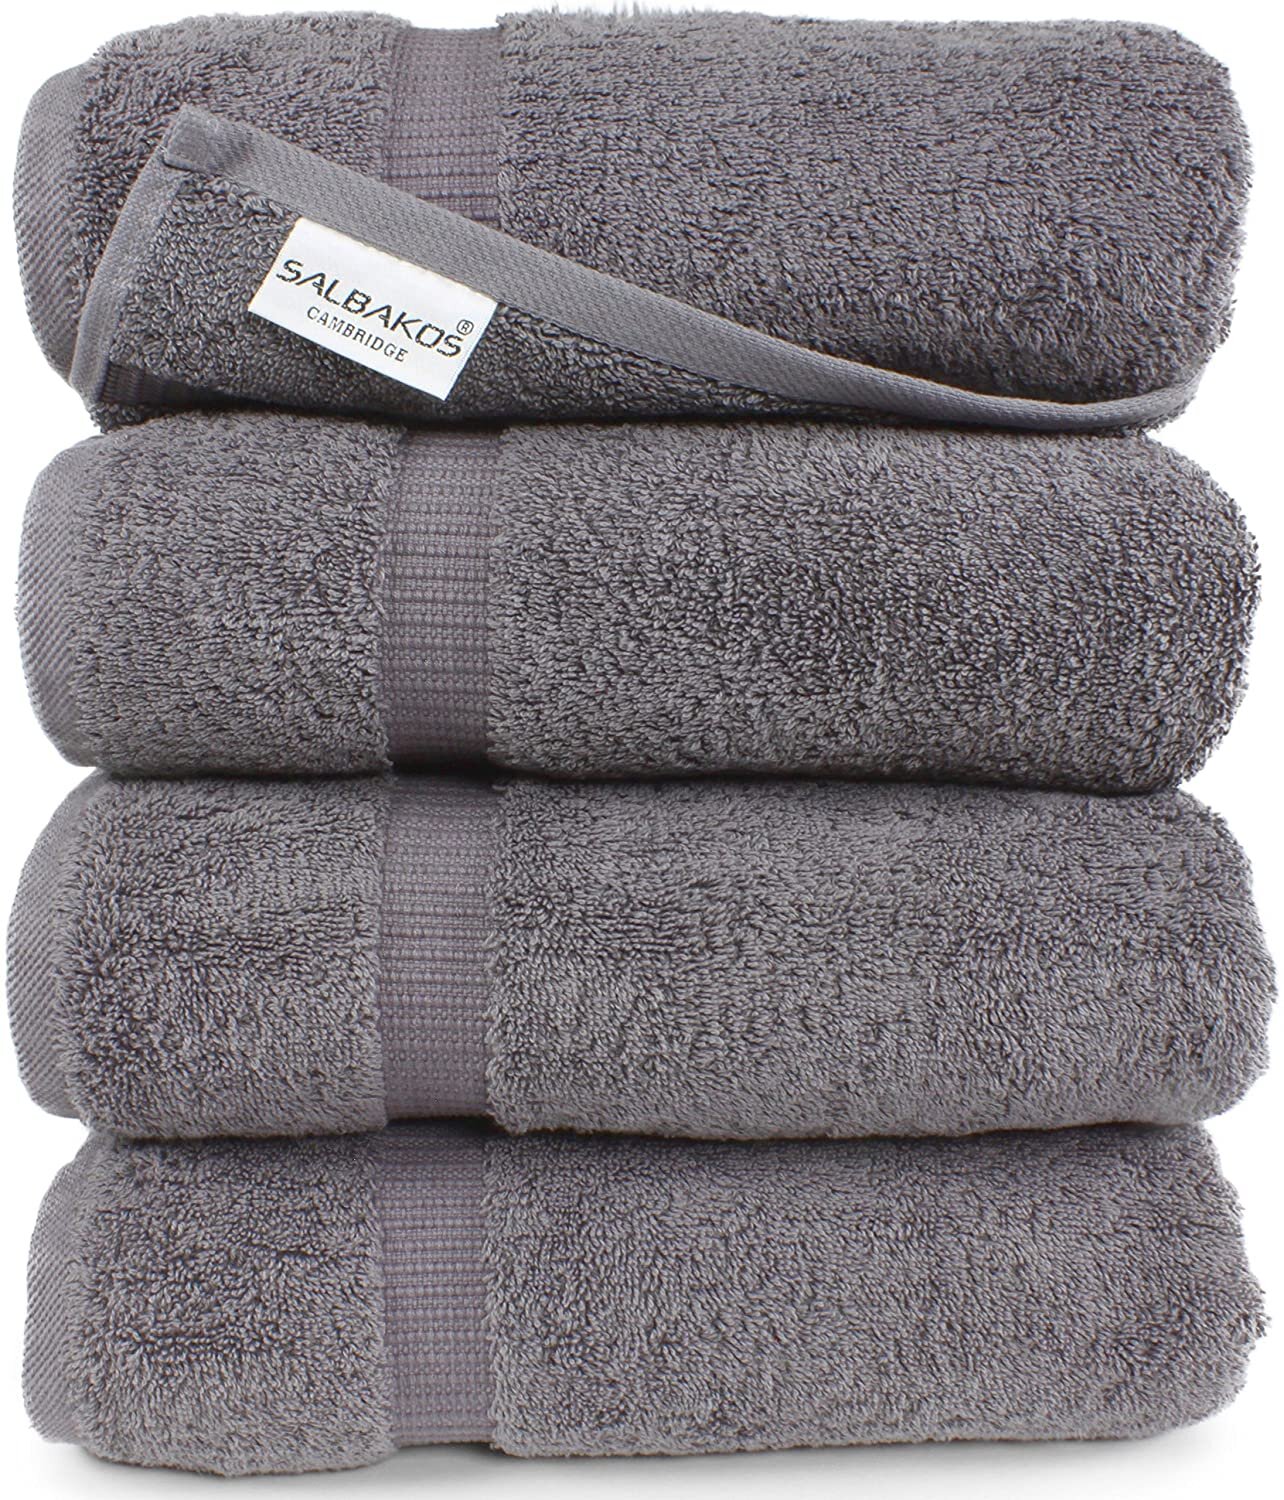 Gray Towels